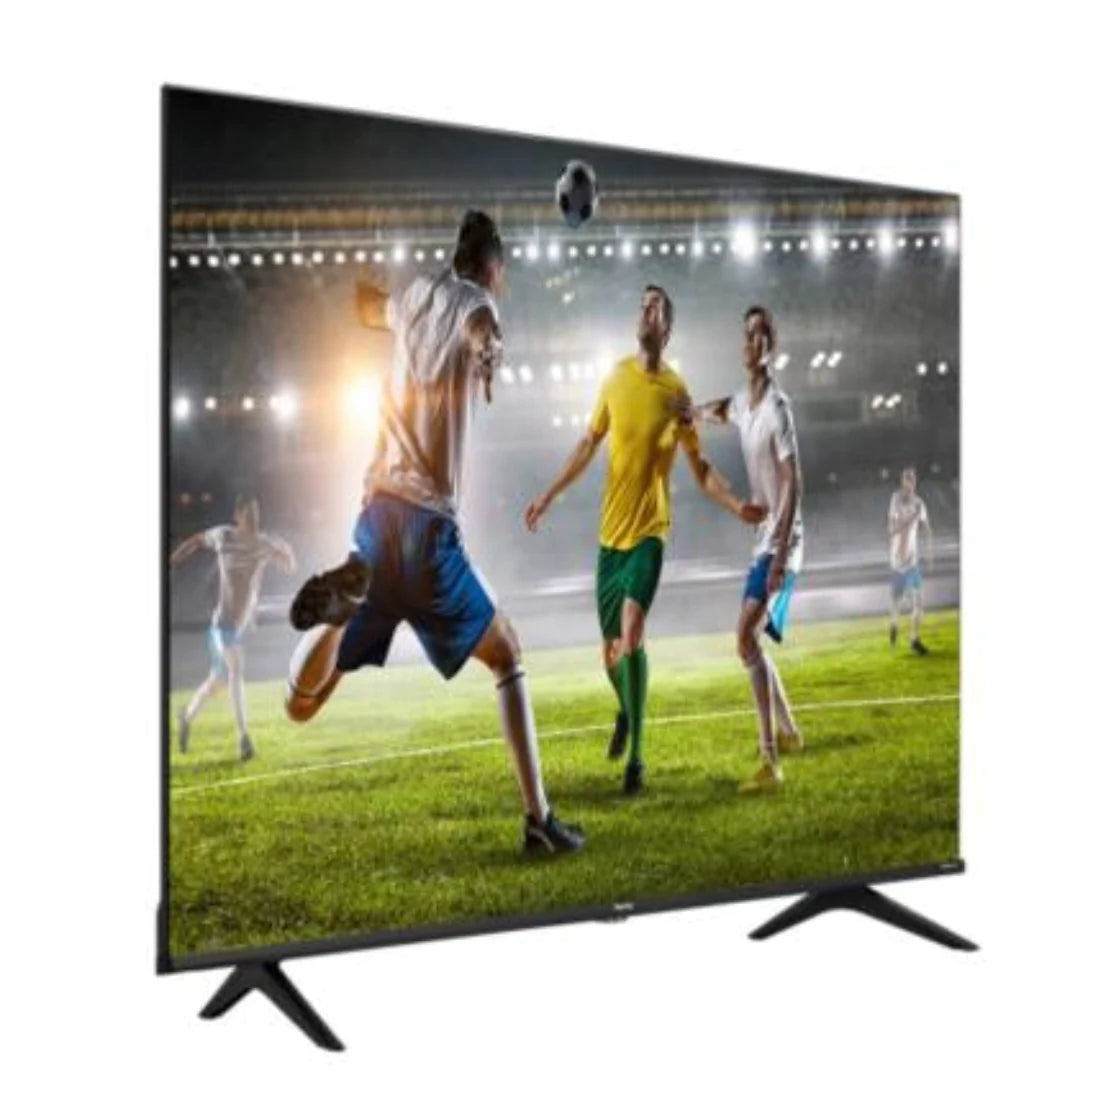 TV Hisense 50 Pulgadas 4K Ultra HD Smart TV LED 50A65HV